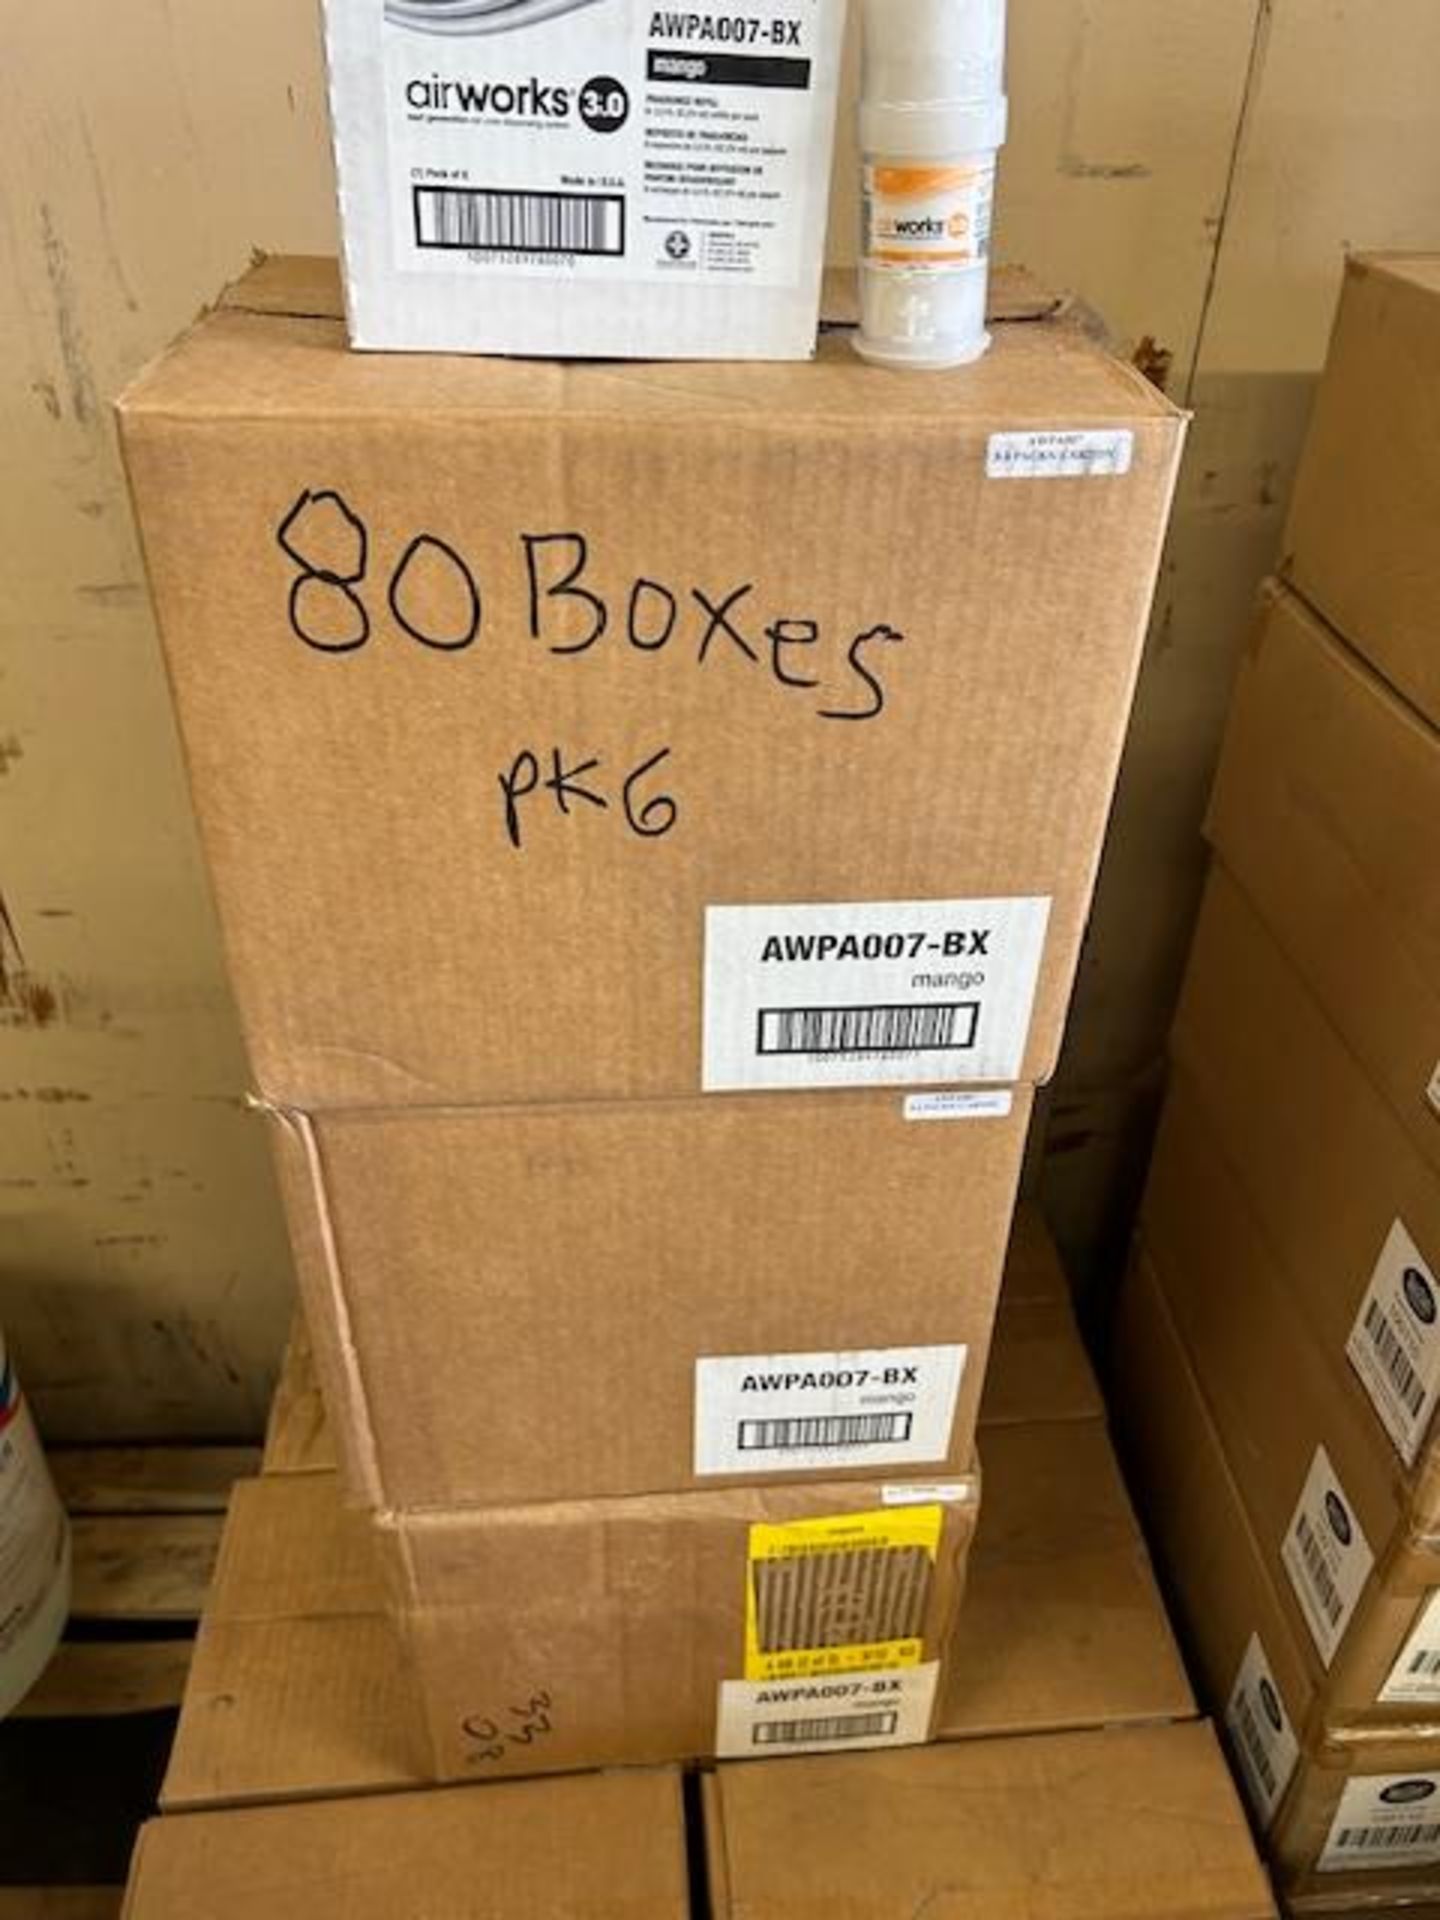 (80) Boxes - Hospeco AWPA007 Mango Fragrence Refill (Pack 6/74 mL) - Image 2 of 2